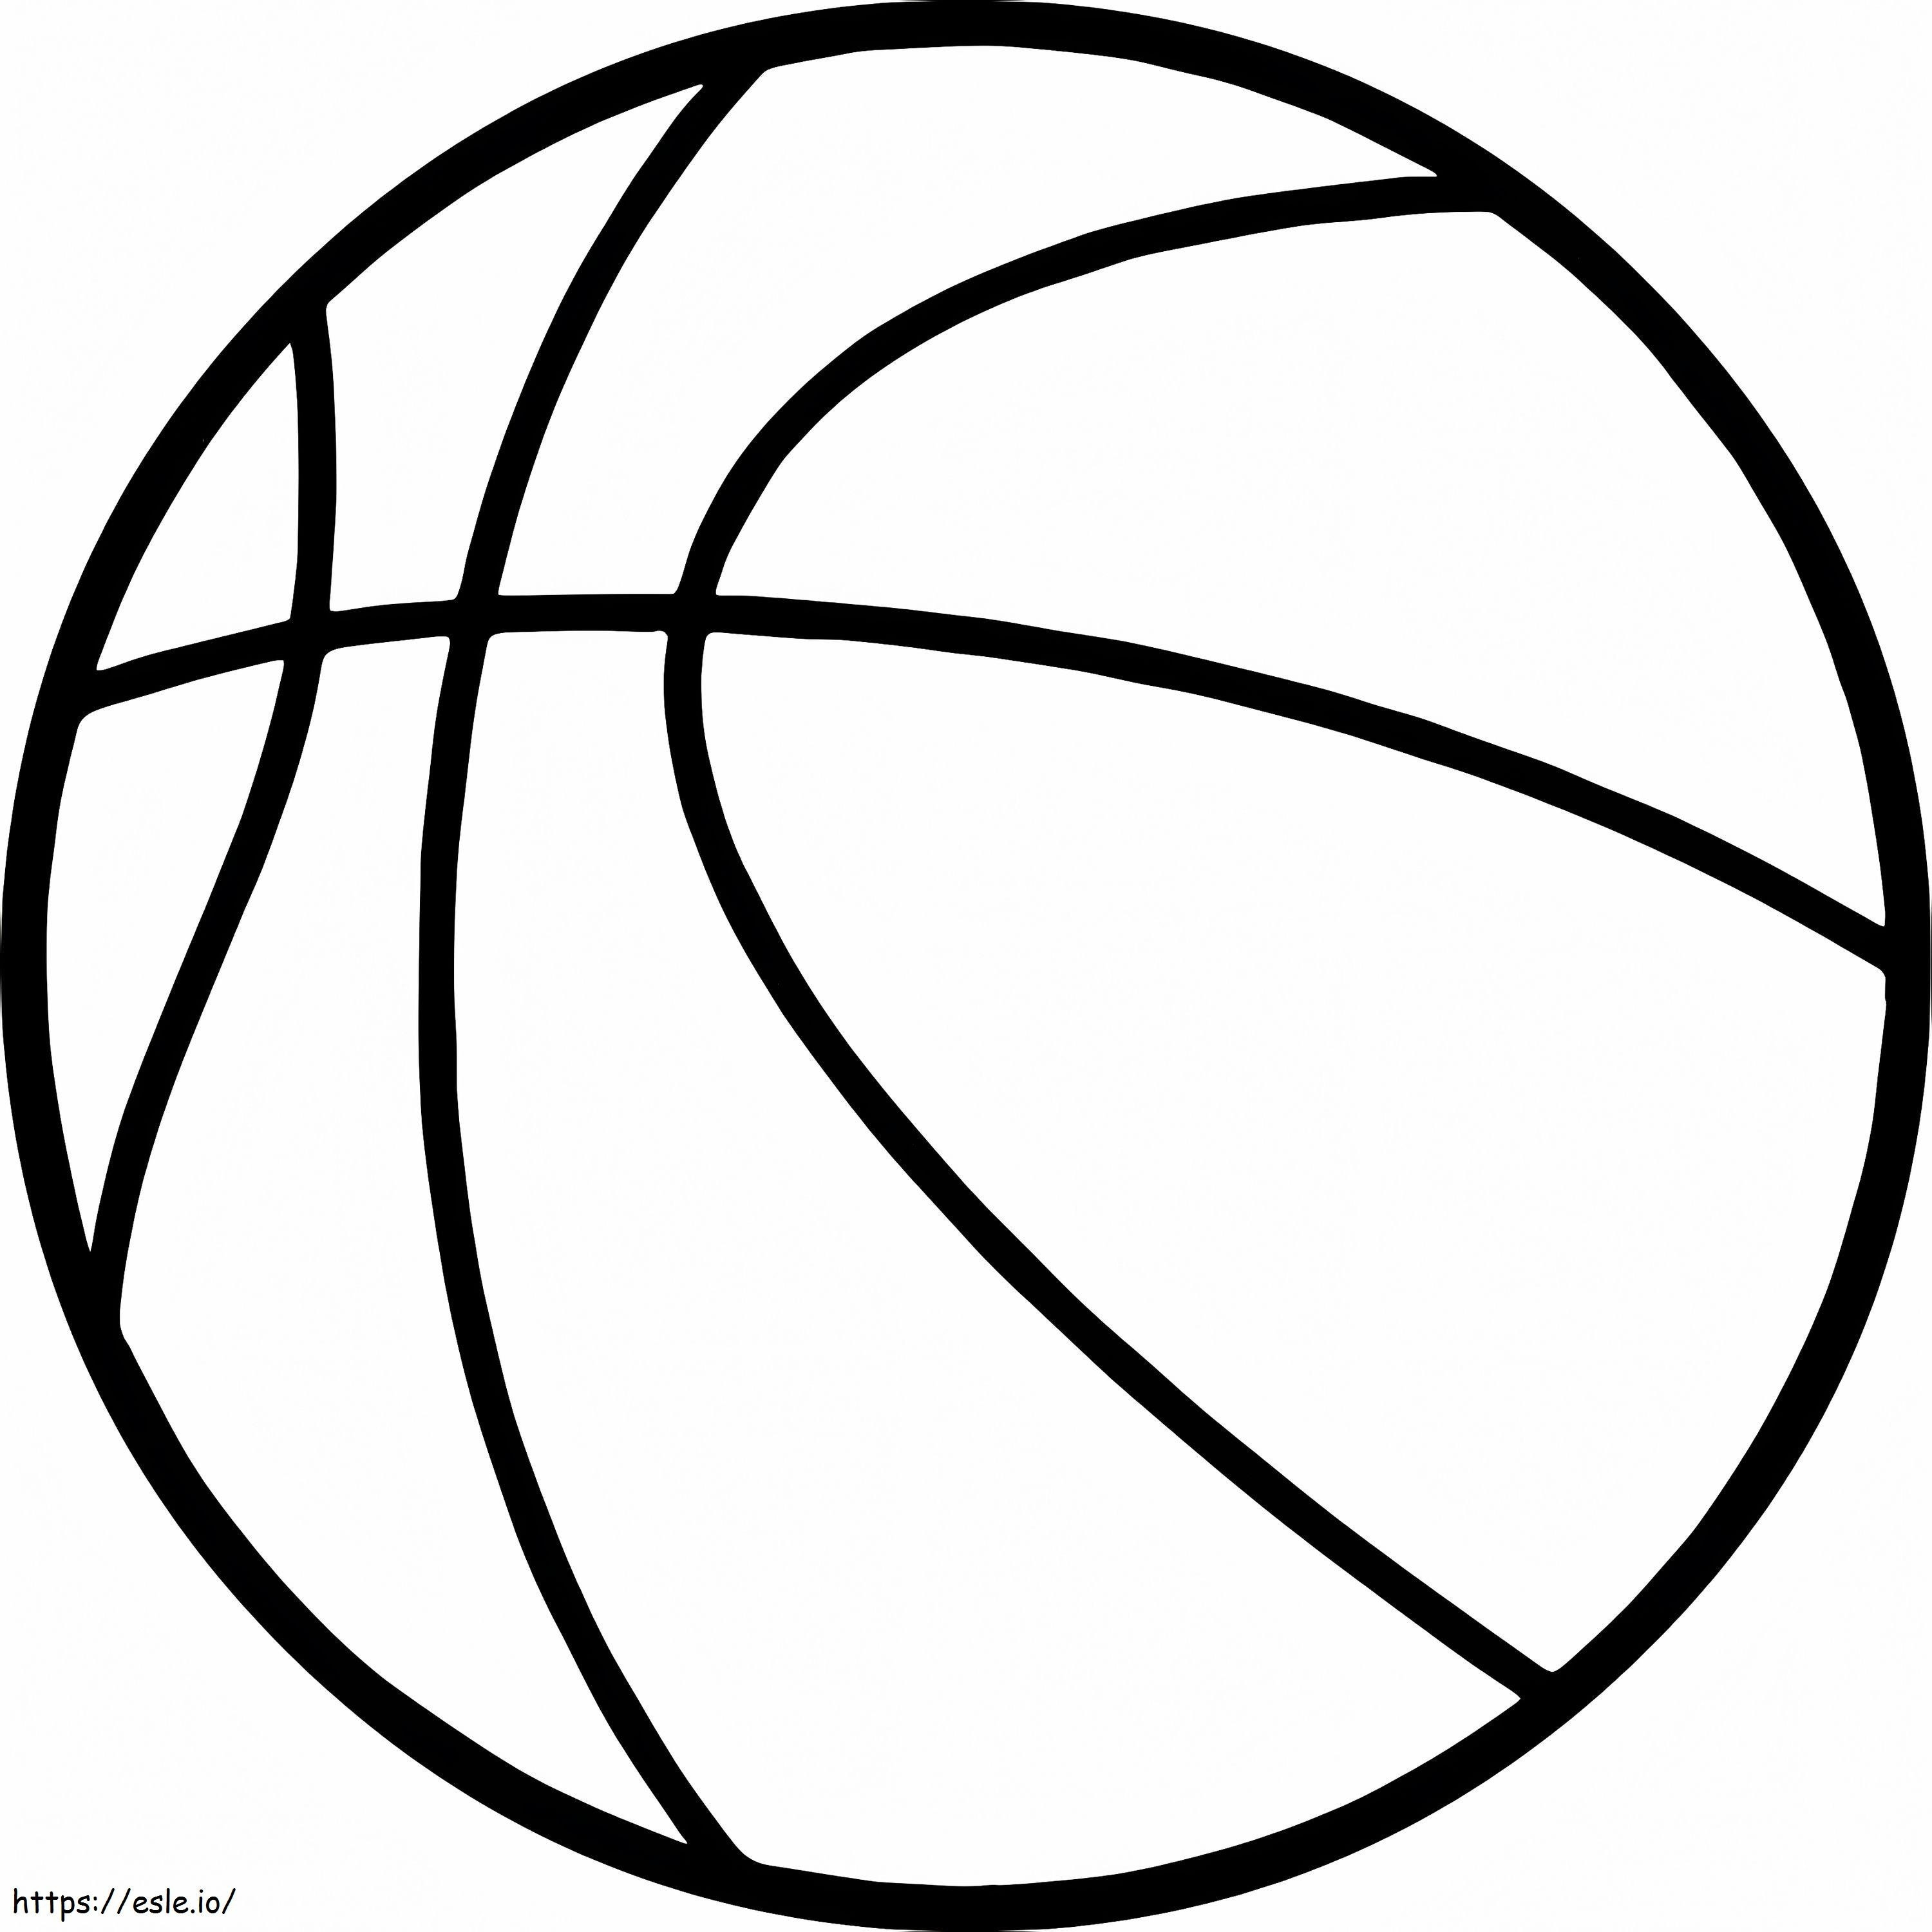 Pallone da basket facile da colorare